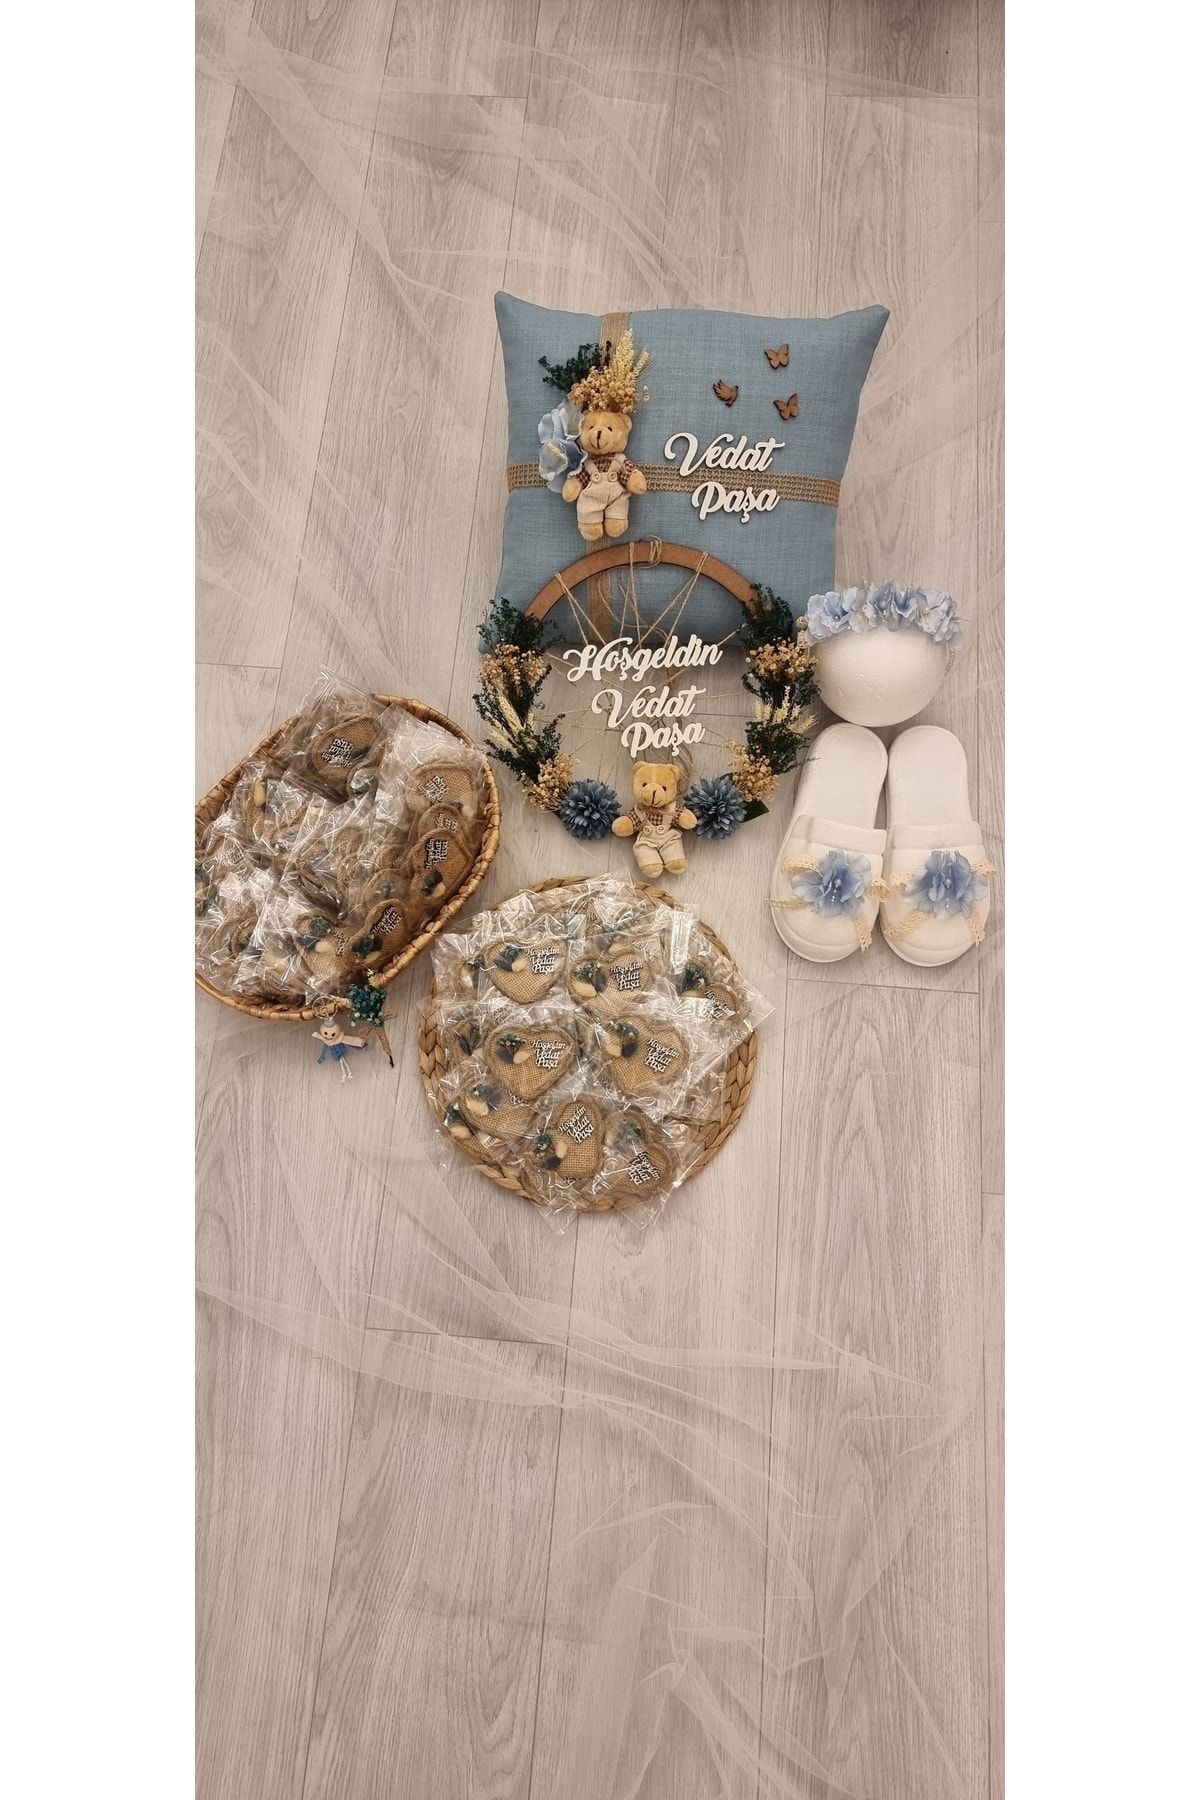 ALMİRA BABY DESİGN BY YASEMİN US Mavi Çiçek Süslemeli Ayıcıklı Takı Yastığı,ahşap Kapı Süsü,lohusa Taç Seti Ve 15 Adet Kalpli Magnet